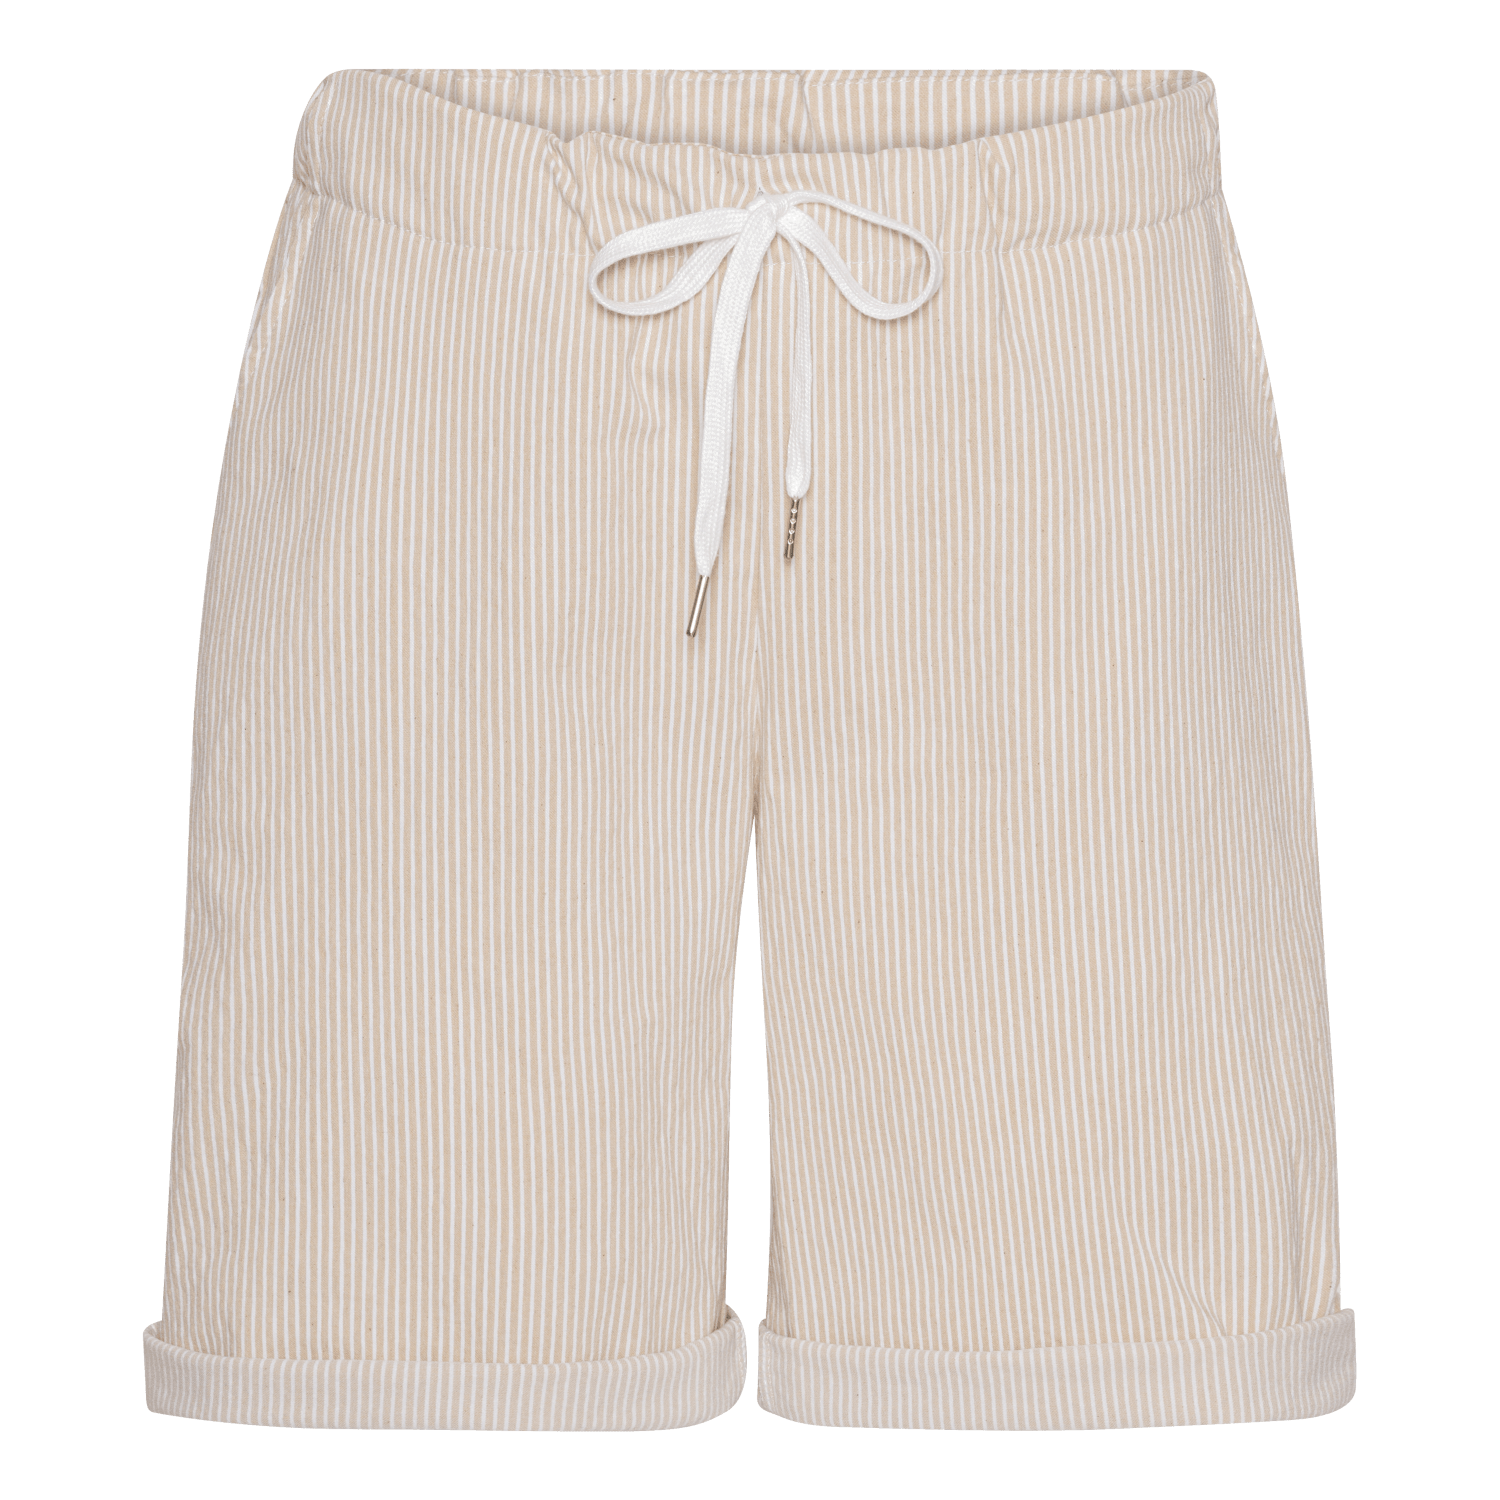 Pinstripe Shorts - Beige/White - Amaze Cph - Beige/White - S